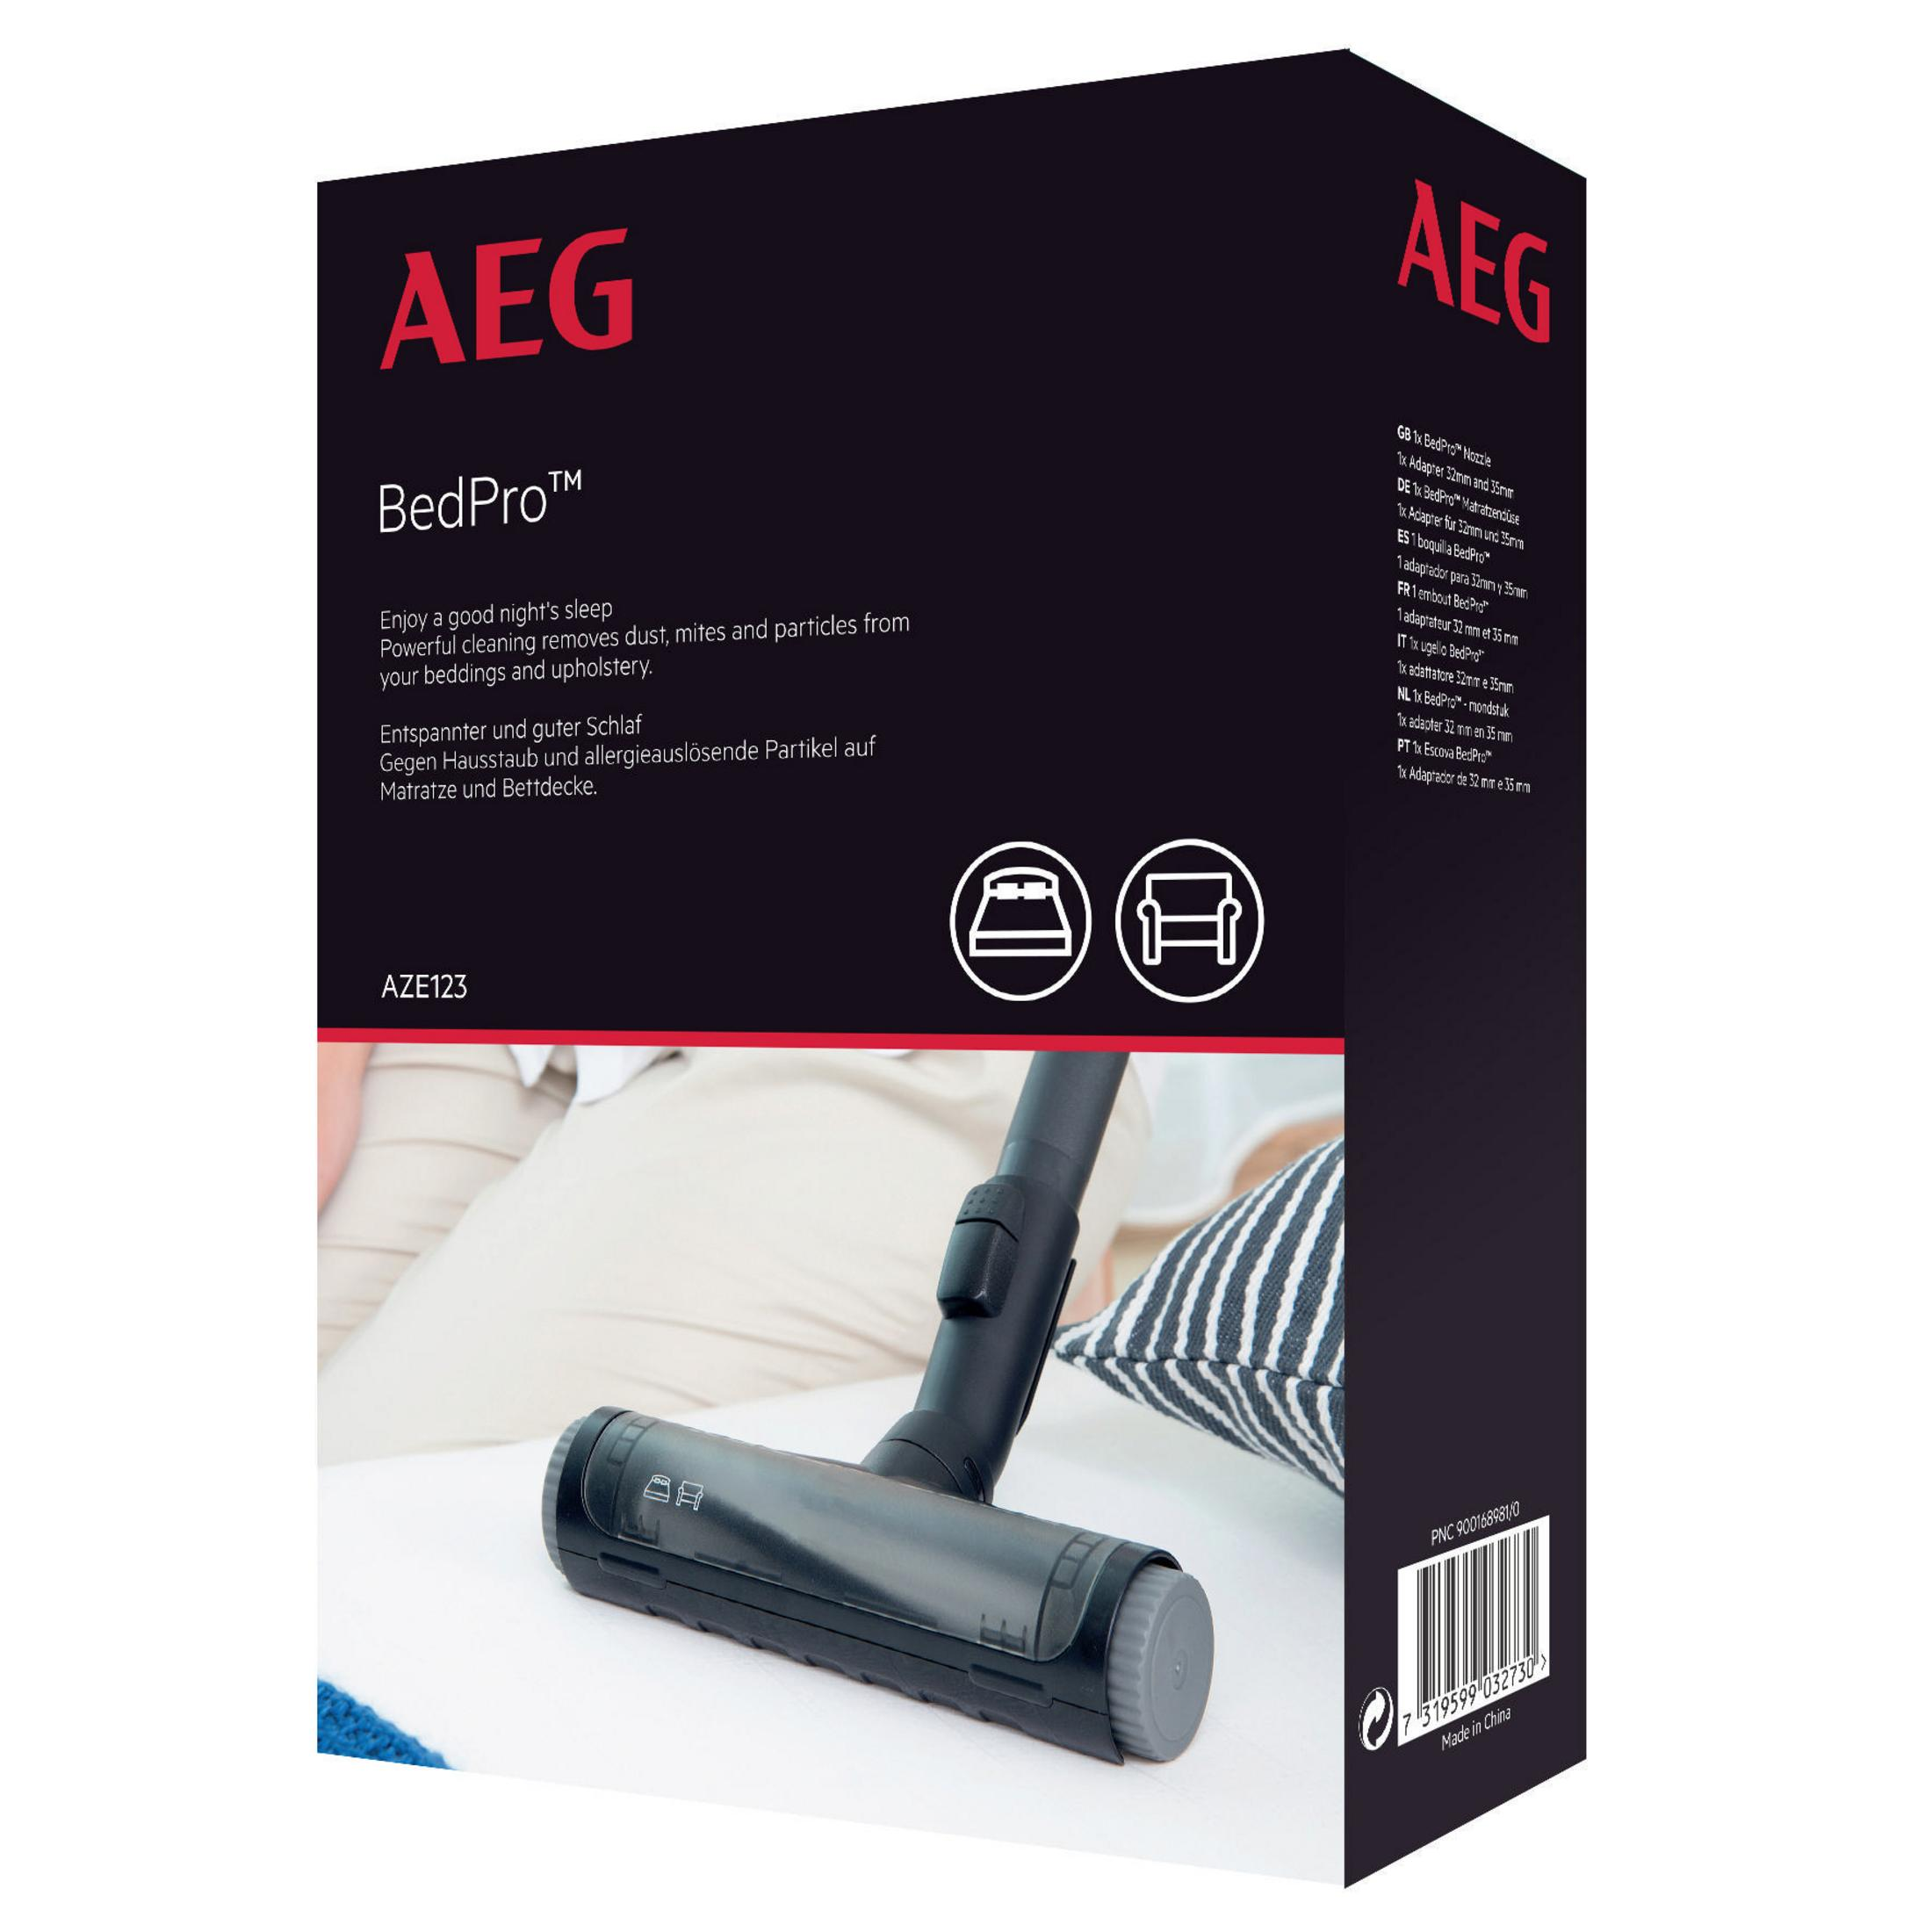 AEG 900168981 AZE123, Matratzendüse